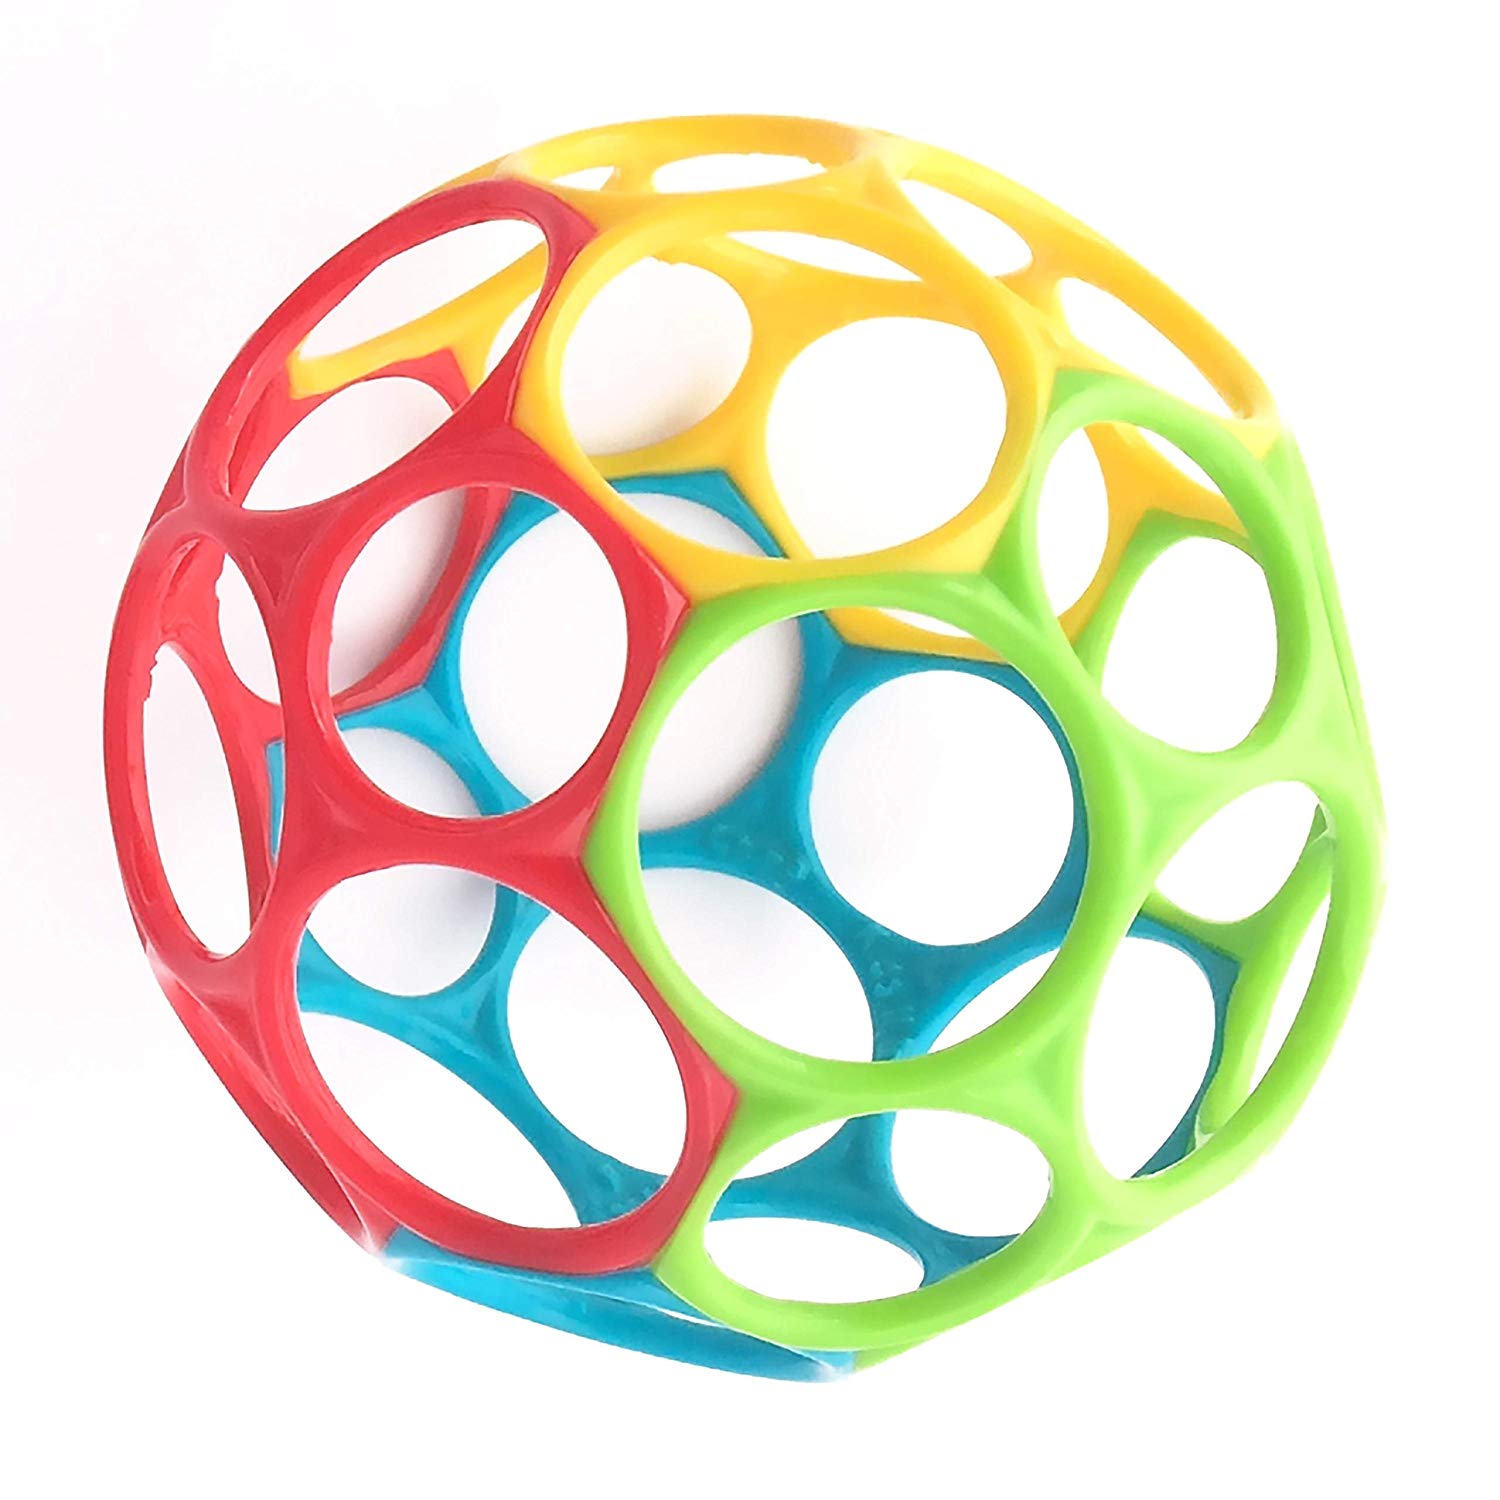 De Oball Classic is de meest perfecte bal ooit gemaakt! Met een diameter van ongeveer 10 cm kan dit bekroonde flexibele model gemakkelijk worden gegrepen. Dit speelgoedje is de Meest Verkochte Baby- & peuterspeelgoed